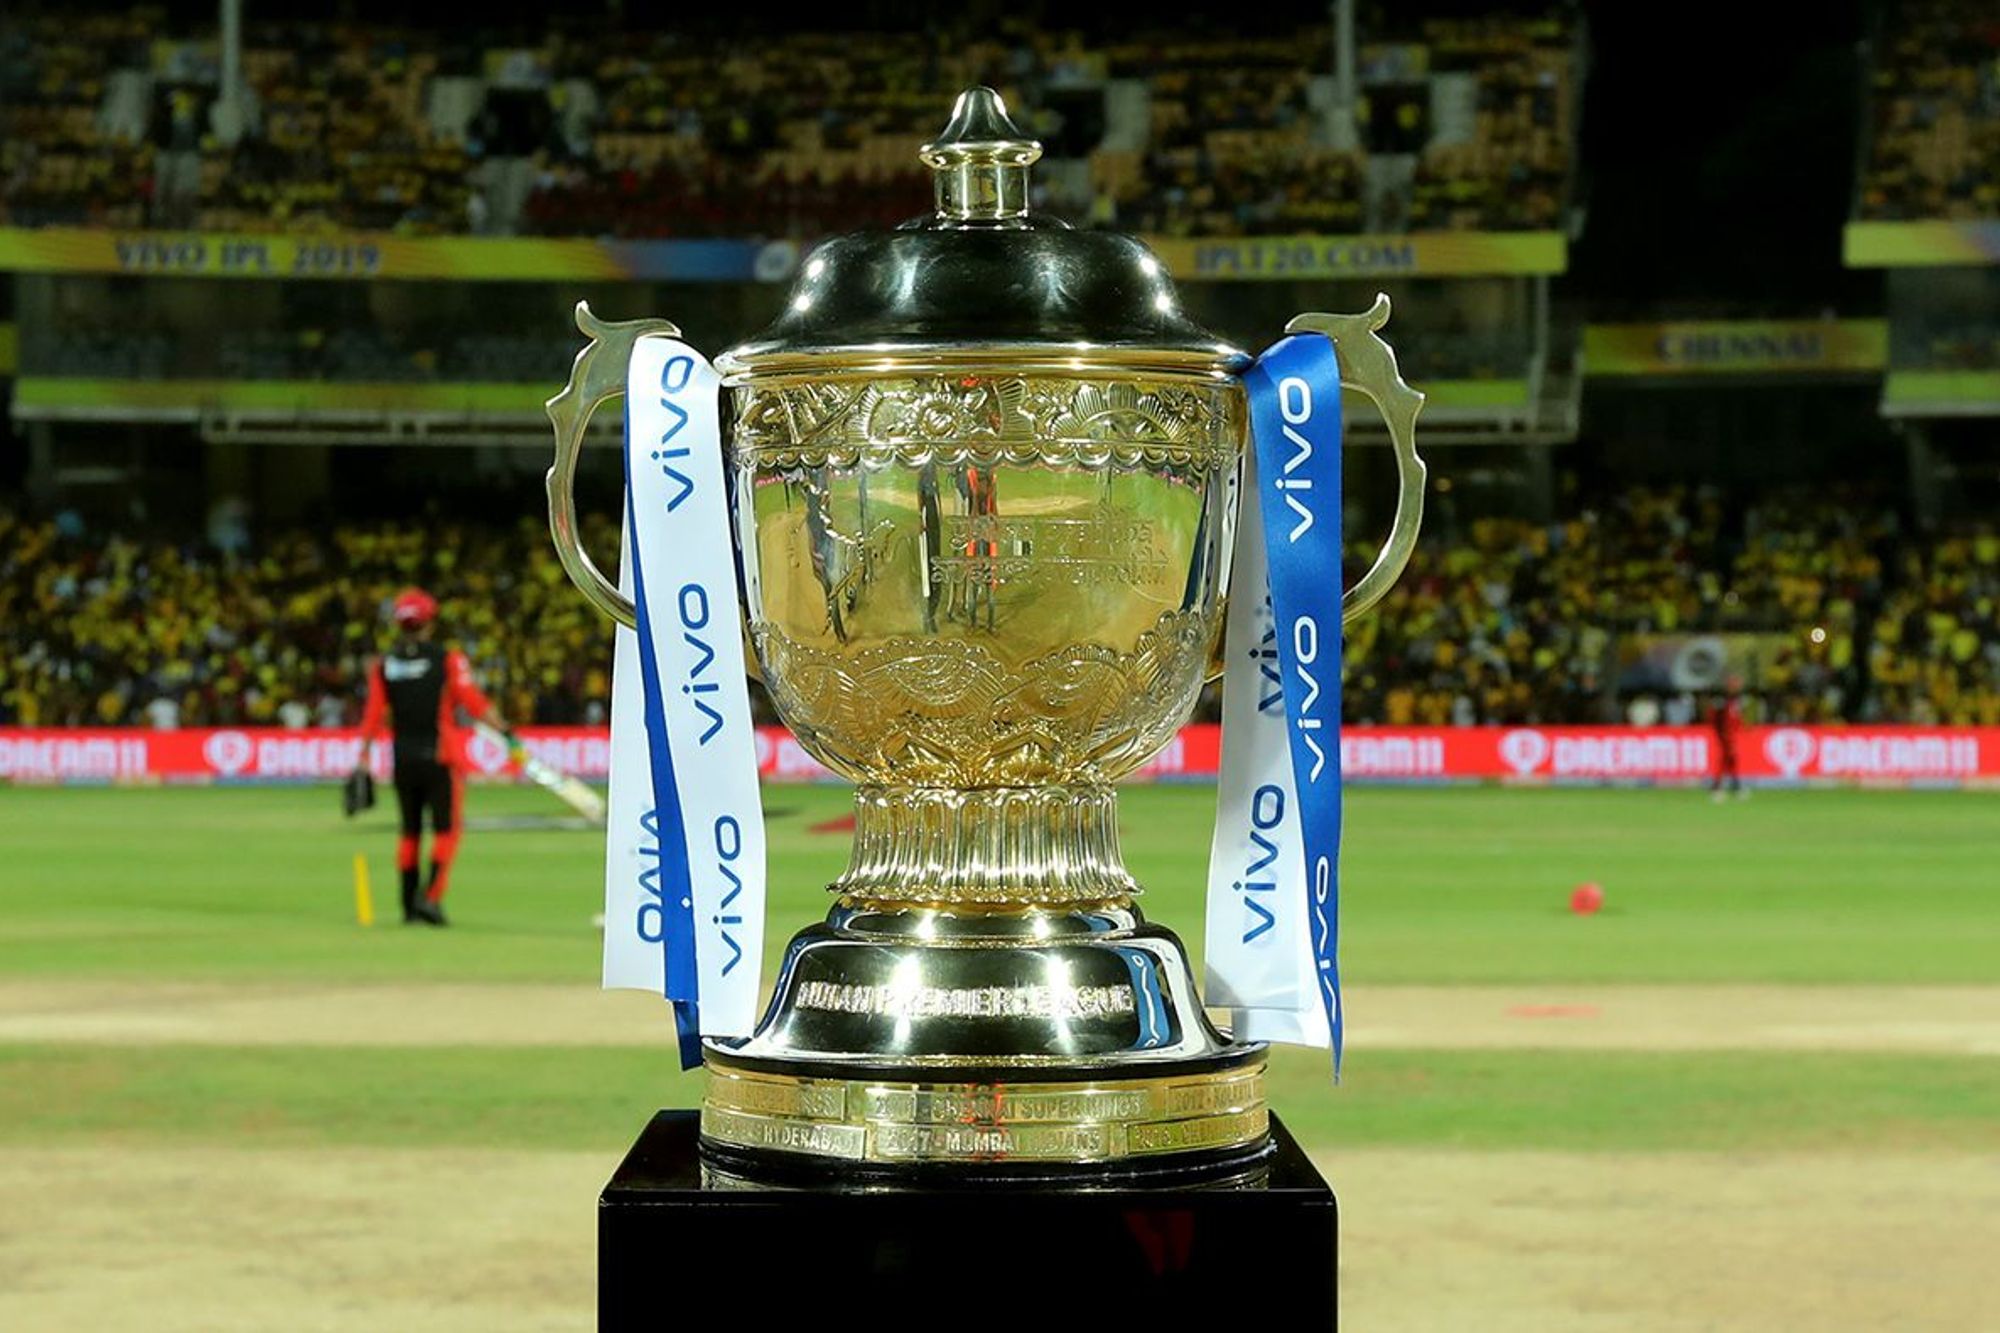 IPL-Trophy